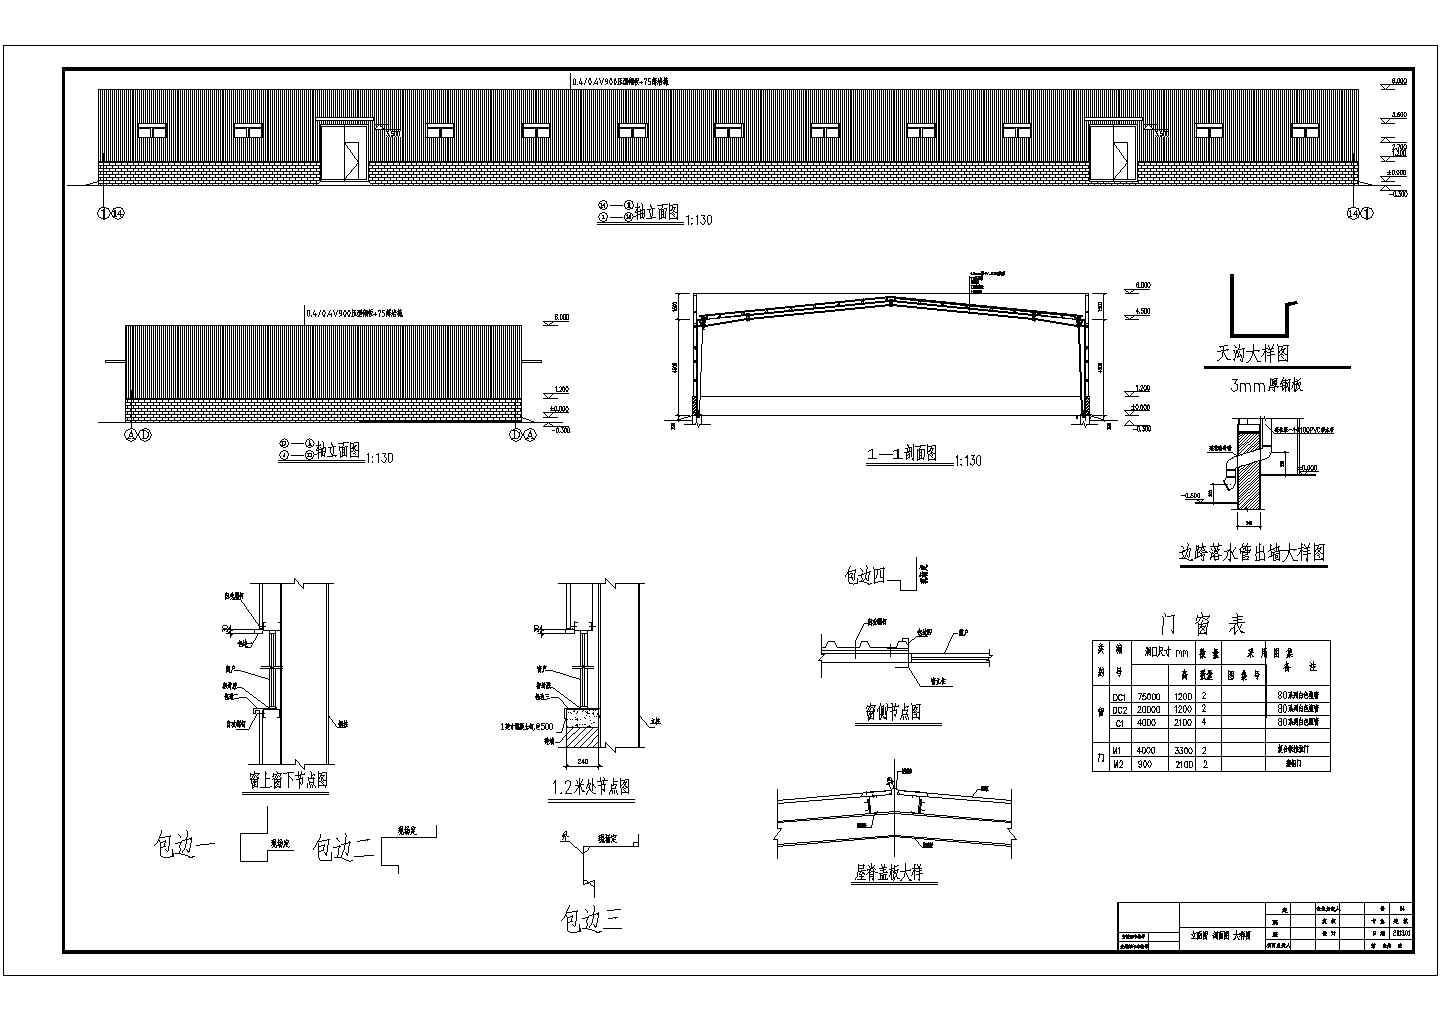 24米跨带女儿墙门式厂房结构施工图